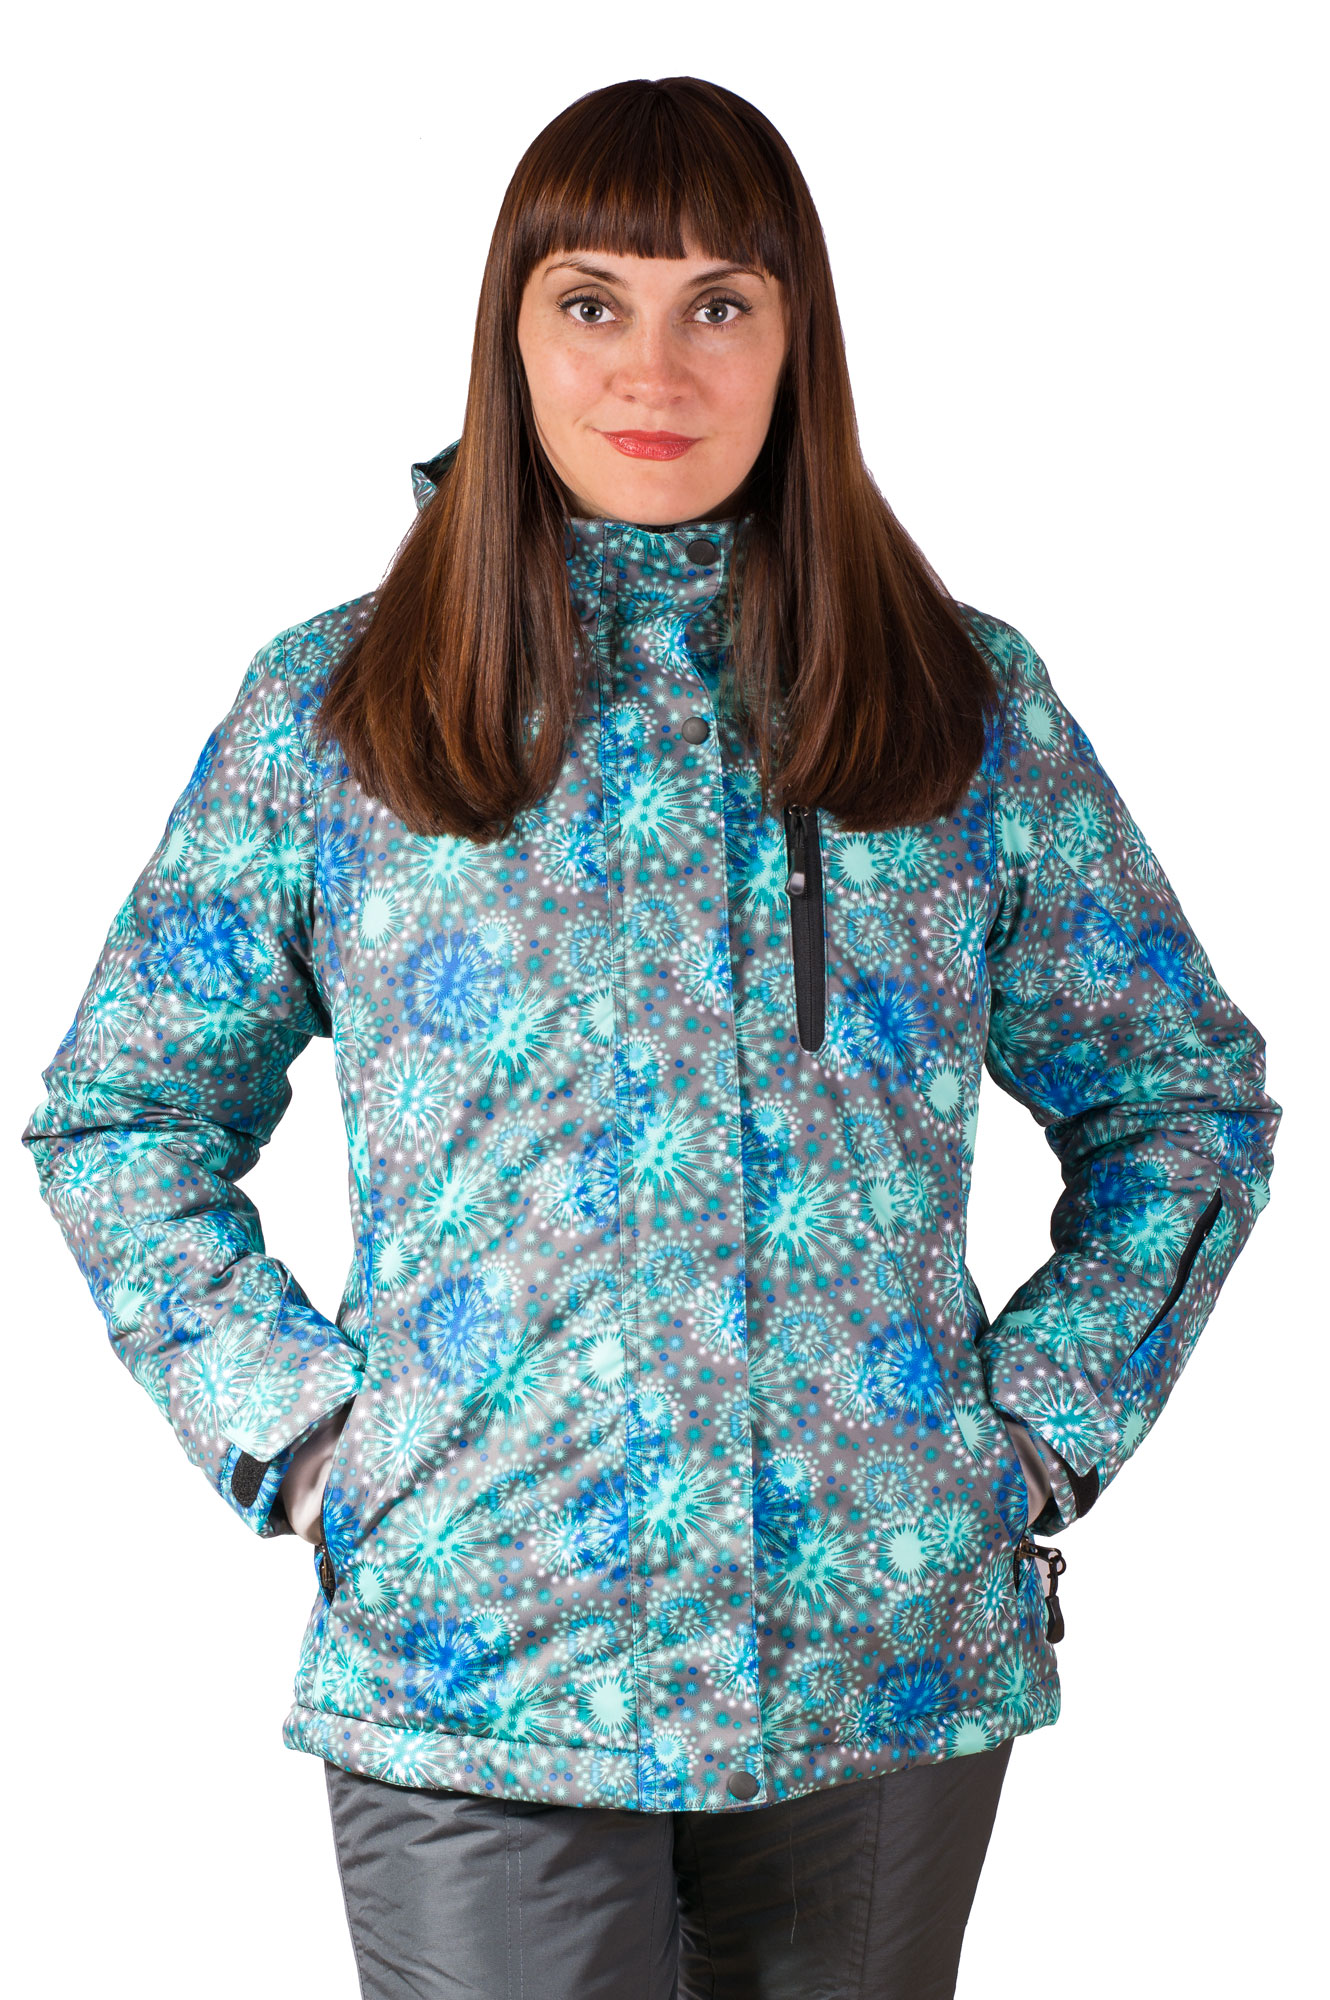 Зимний синий горнолыжный костюм для женщин в интернет магазине фото